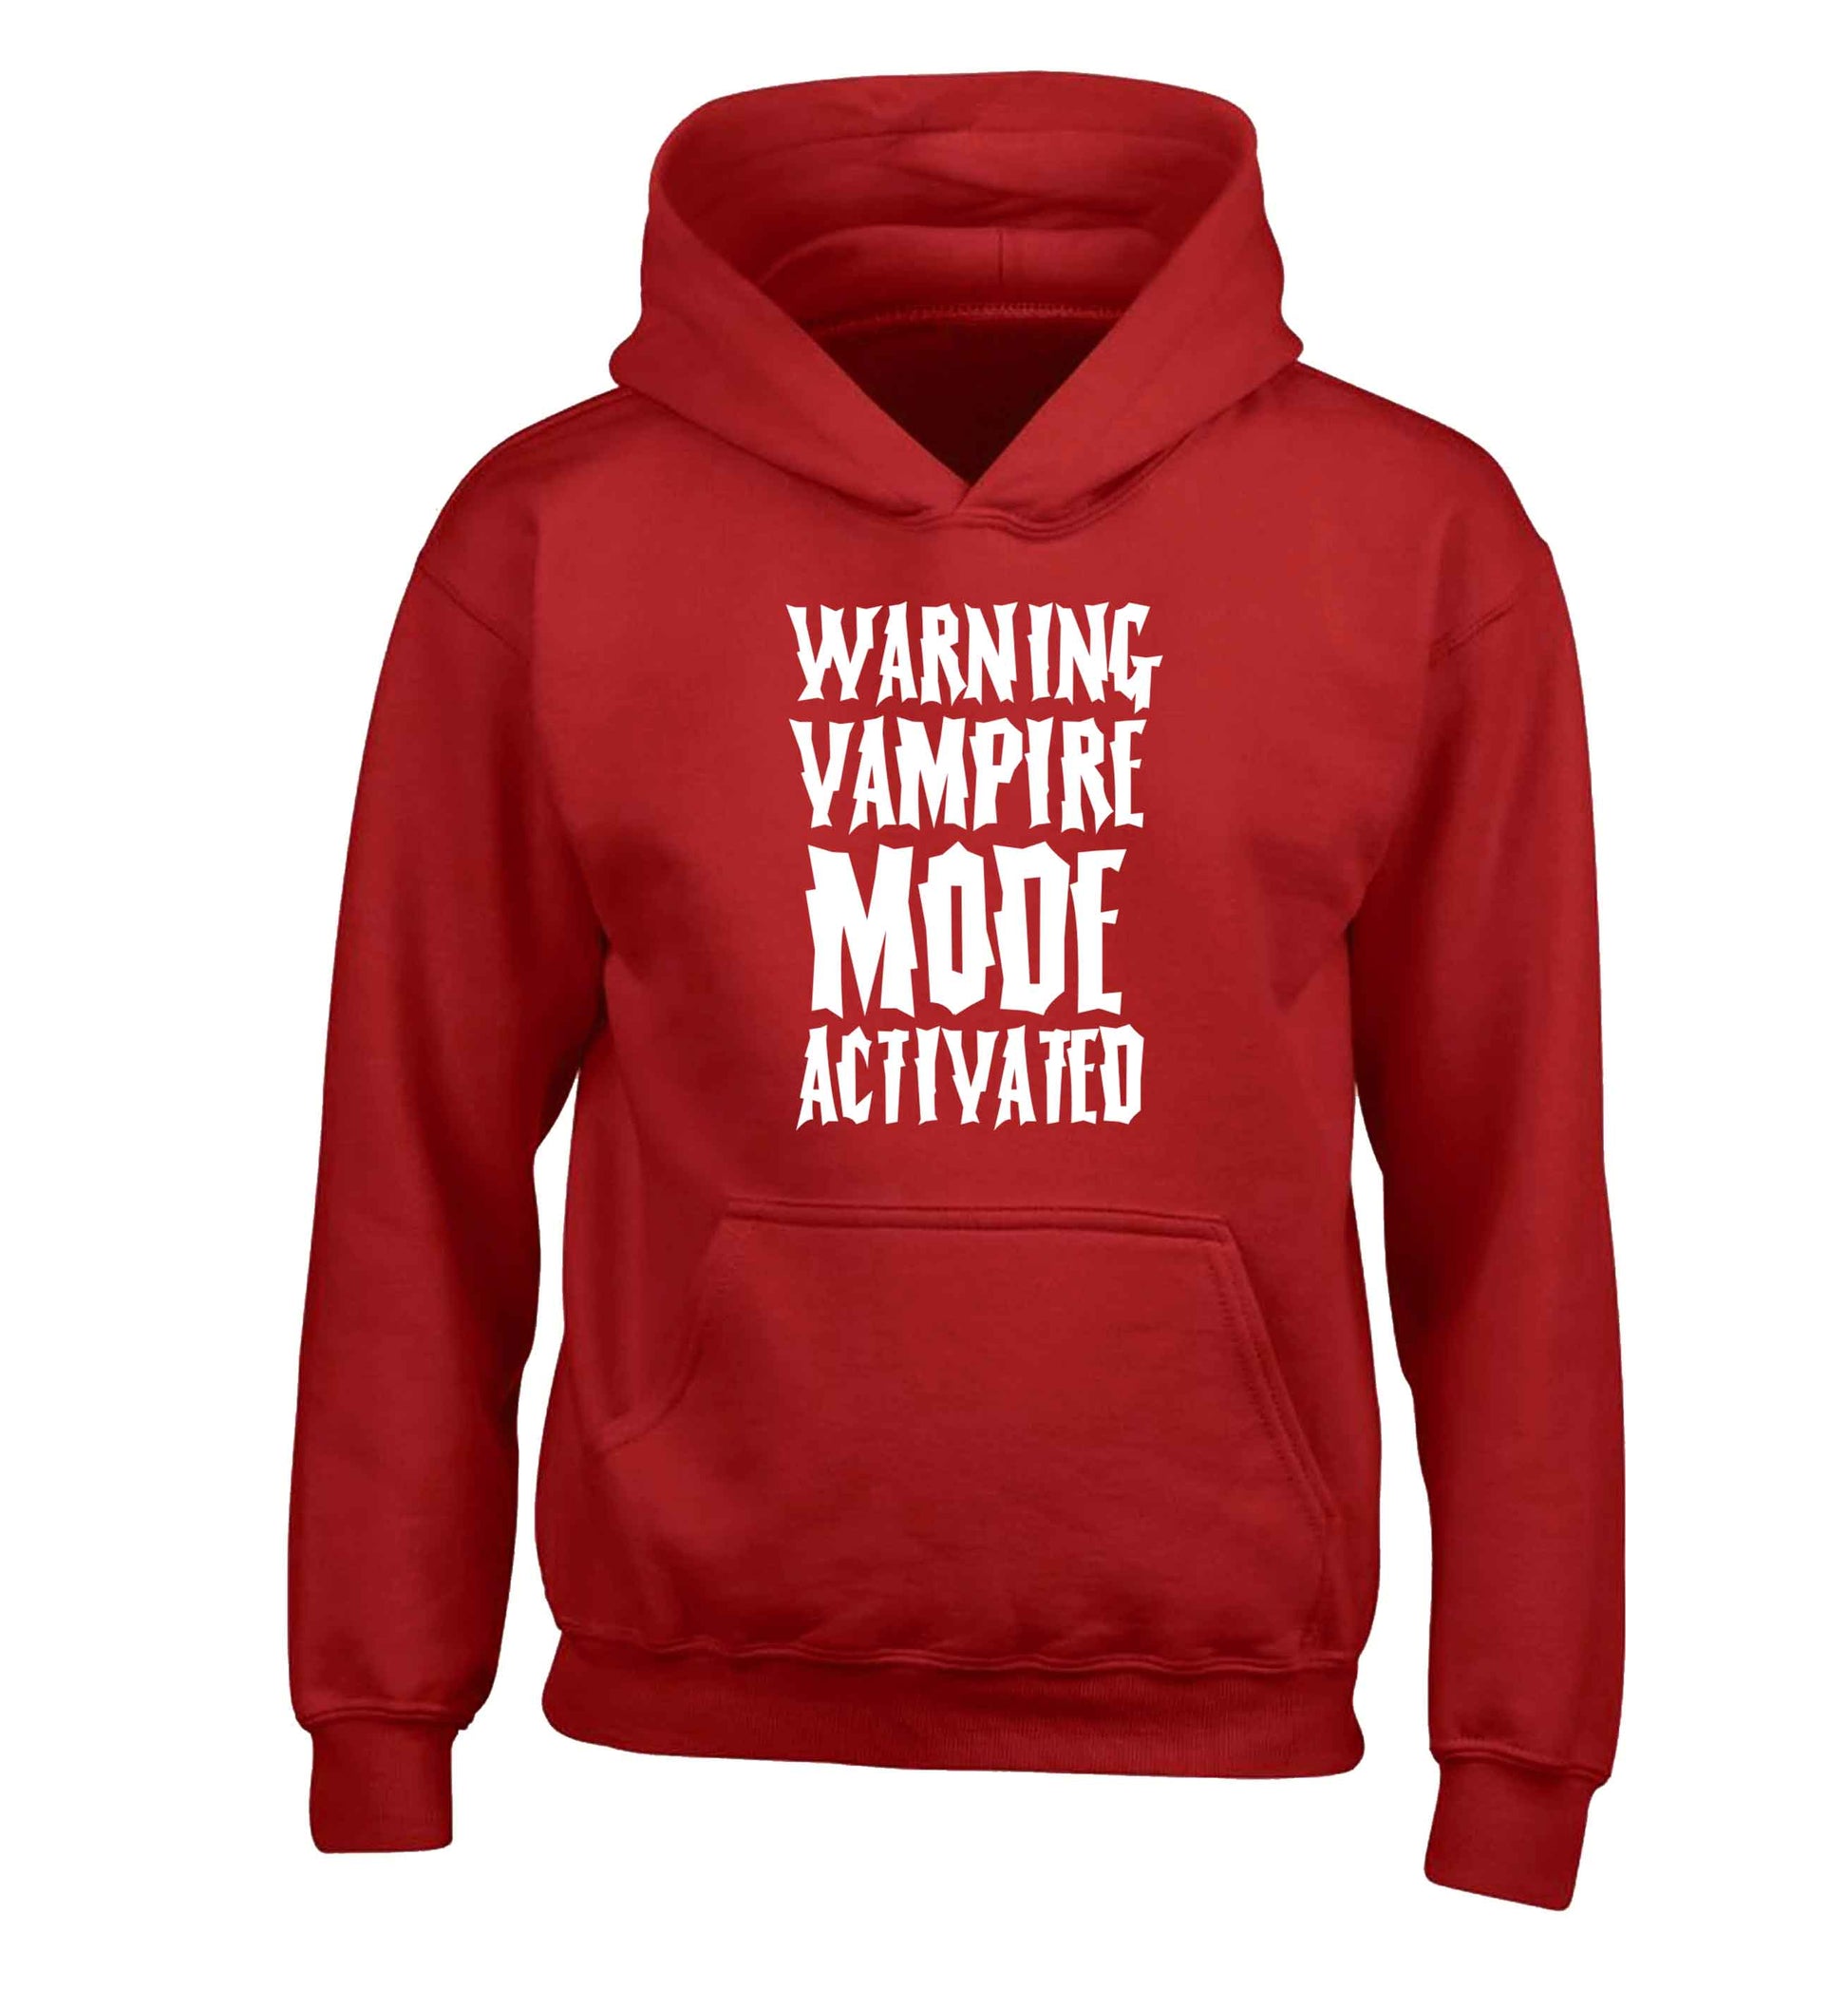 Warning vampire mode activated children's red hoodie 12-13 Years